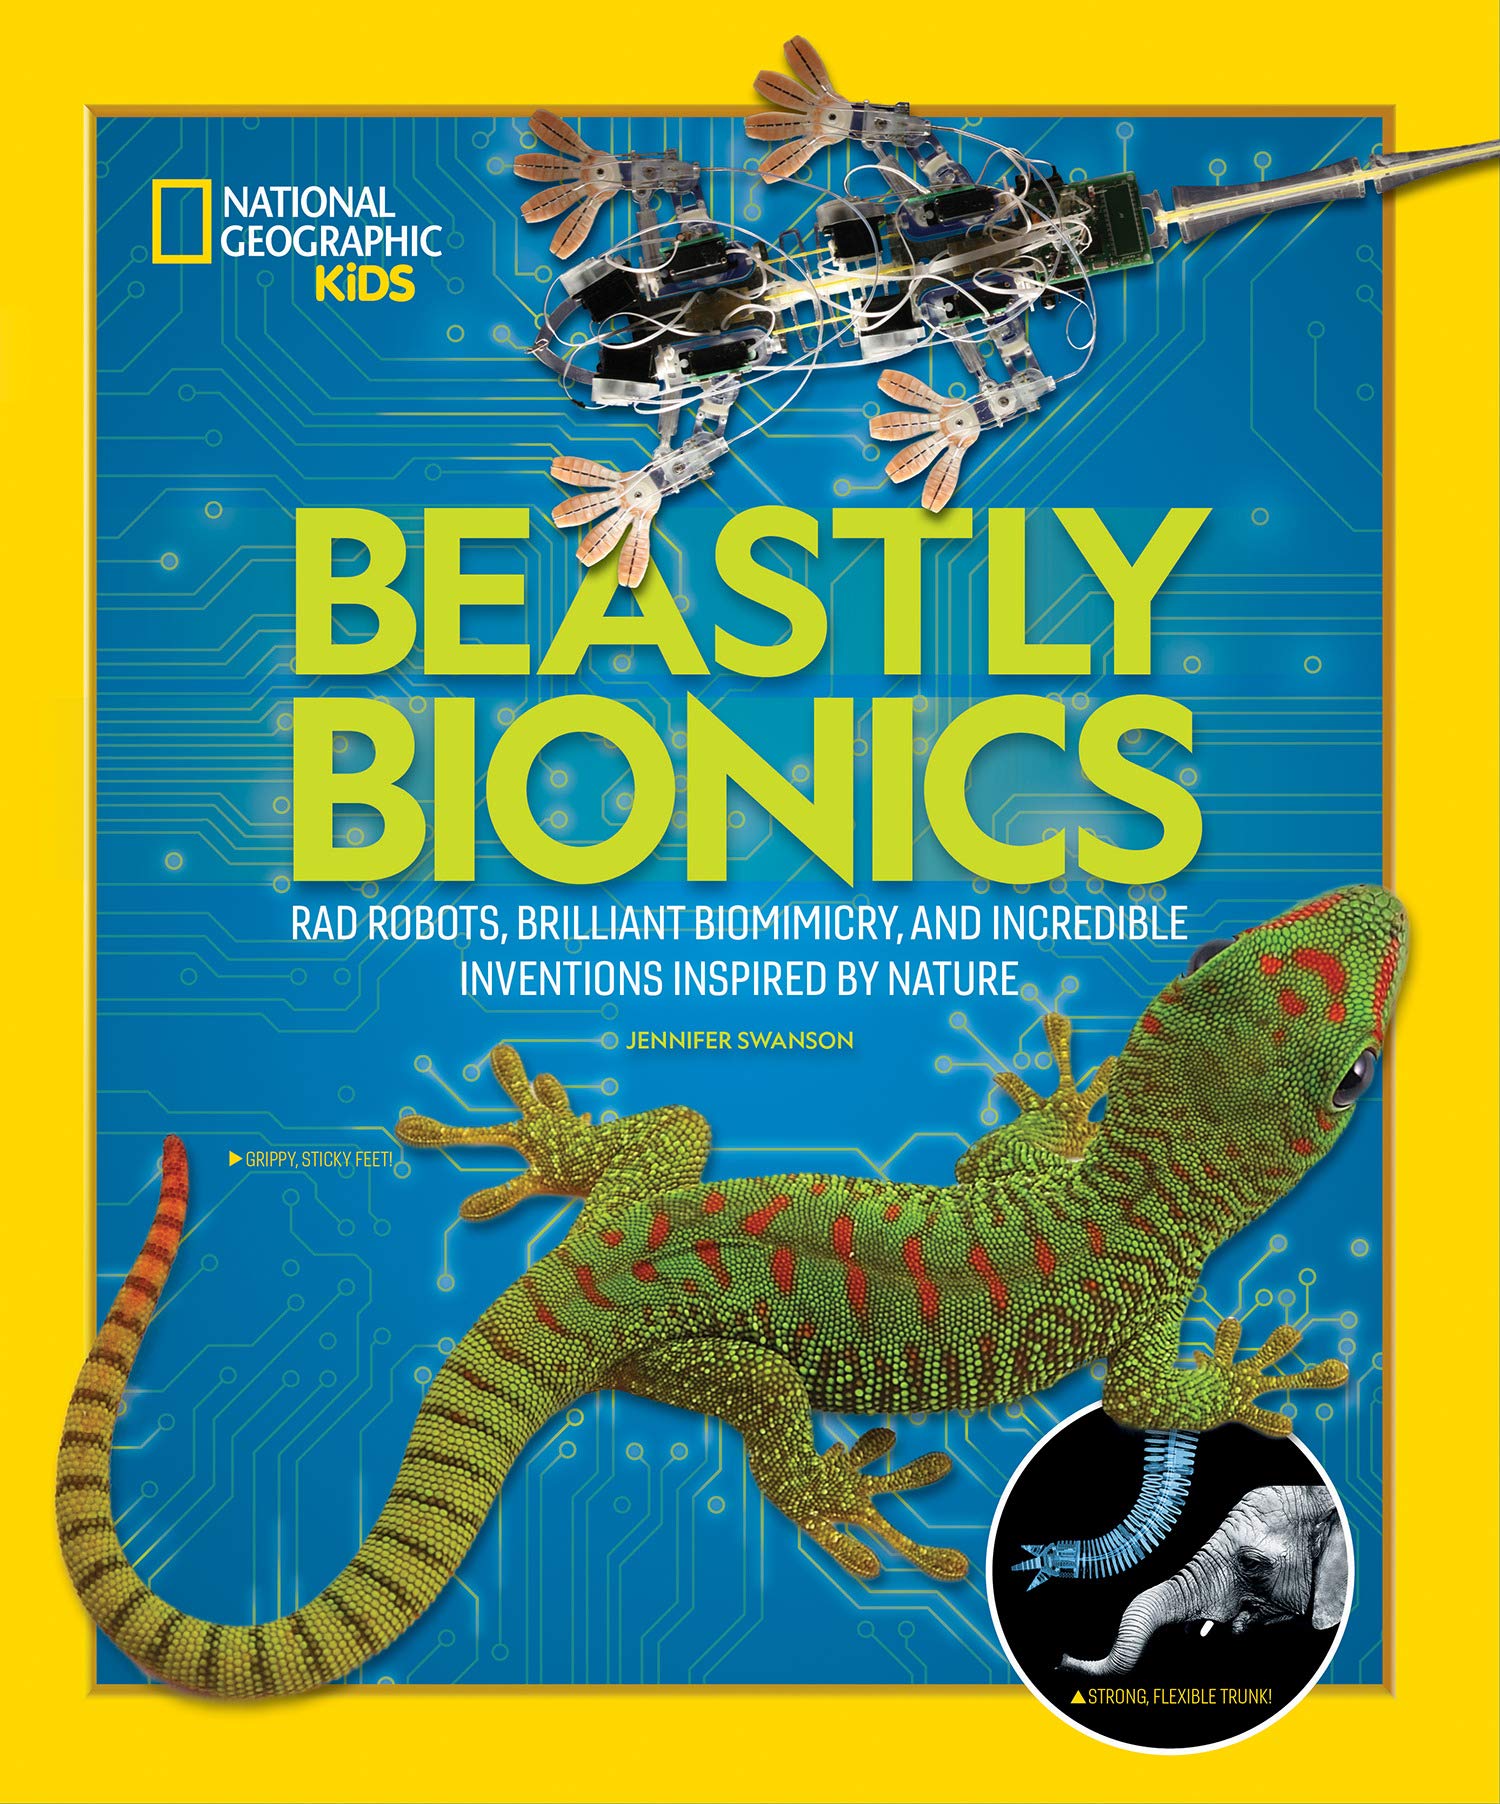 Beastly Bionics